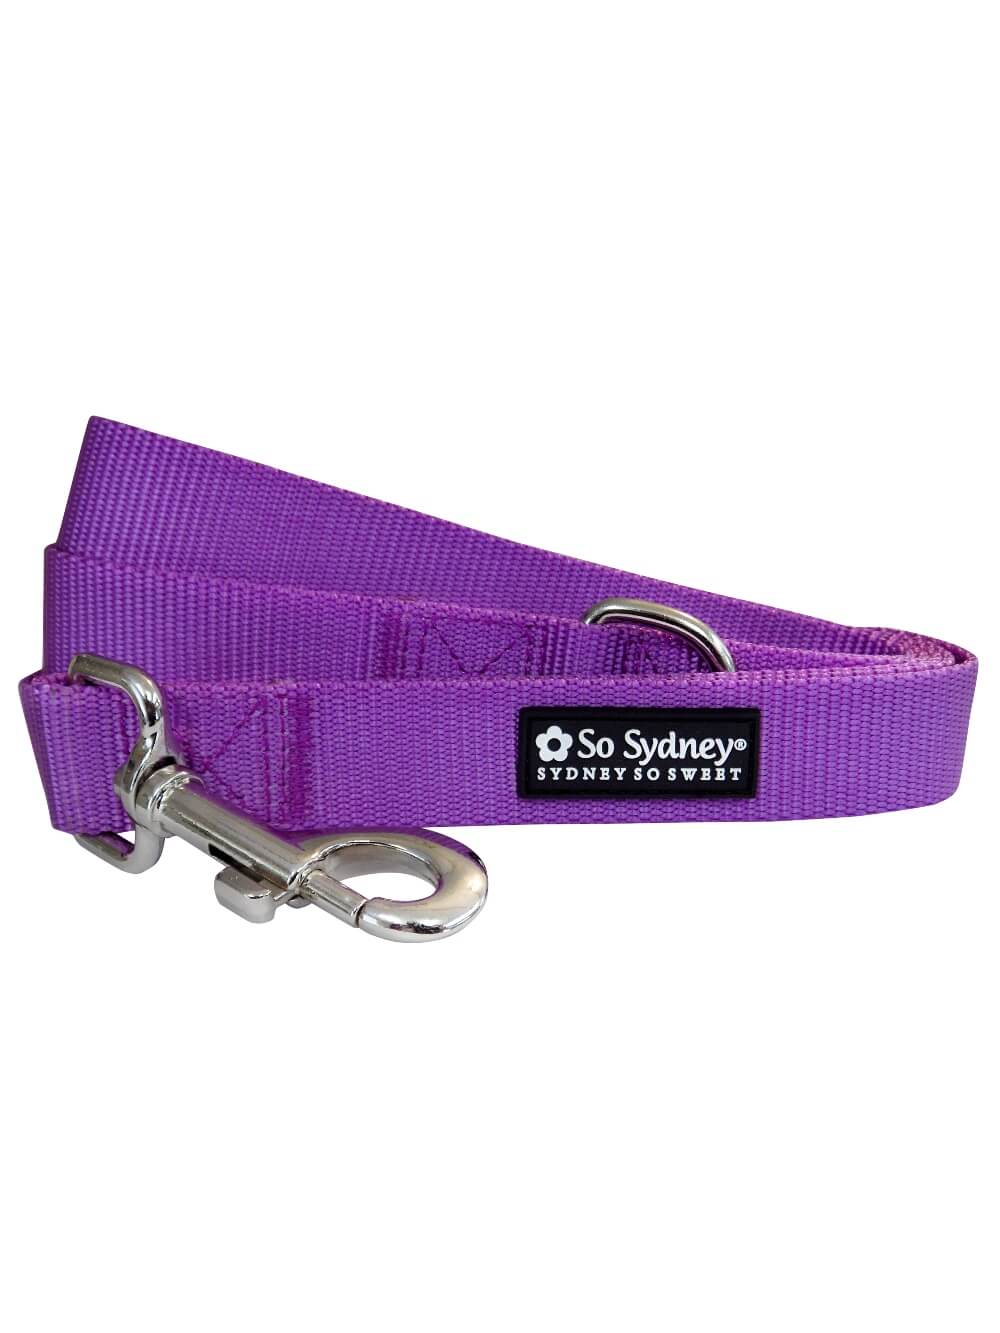 Purple 5' Fashion Basic Nylon Dog Leash for Small, Medium, or Large Dogs - Sydney So Sweet